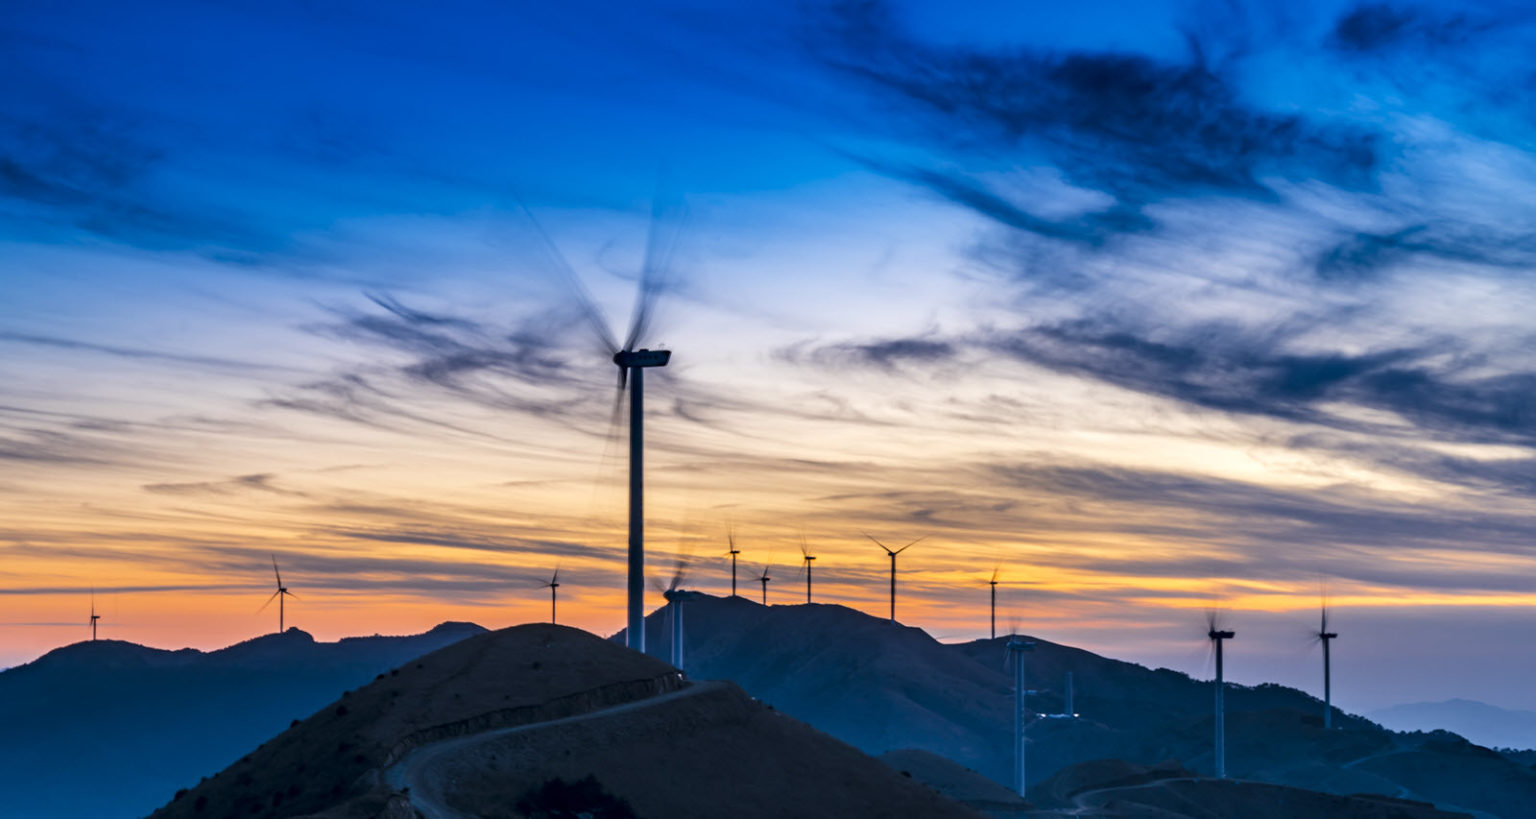 Wind turbine field at sunset on a mountain